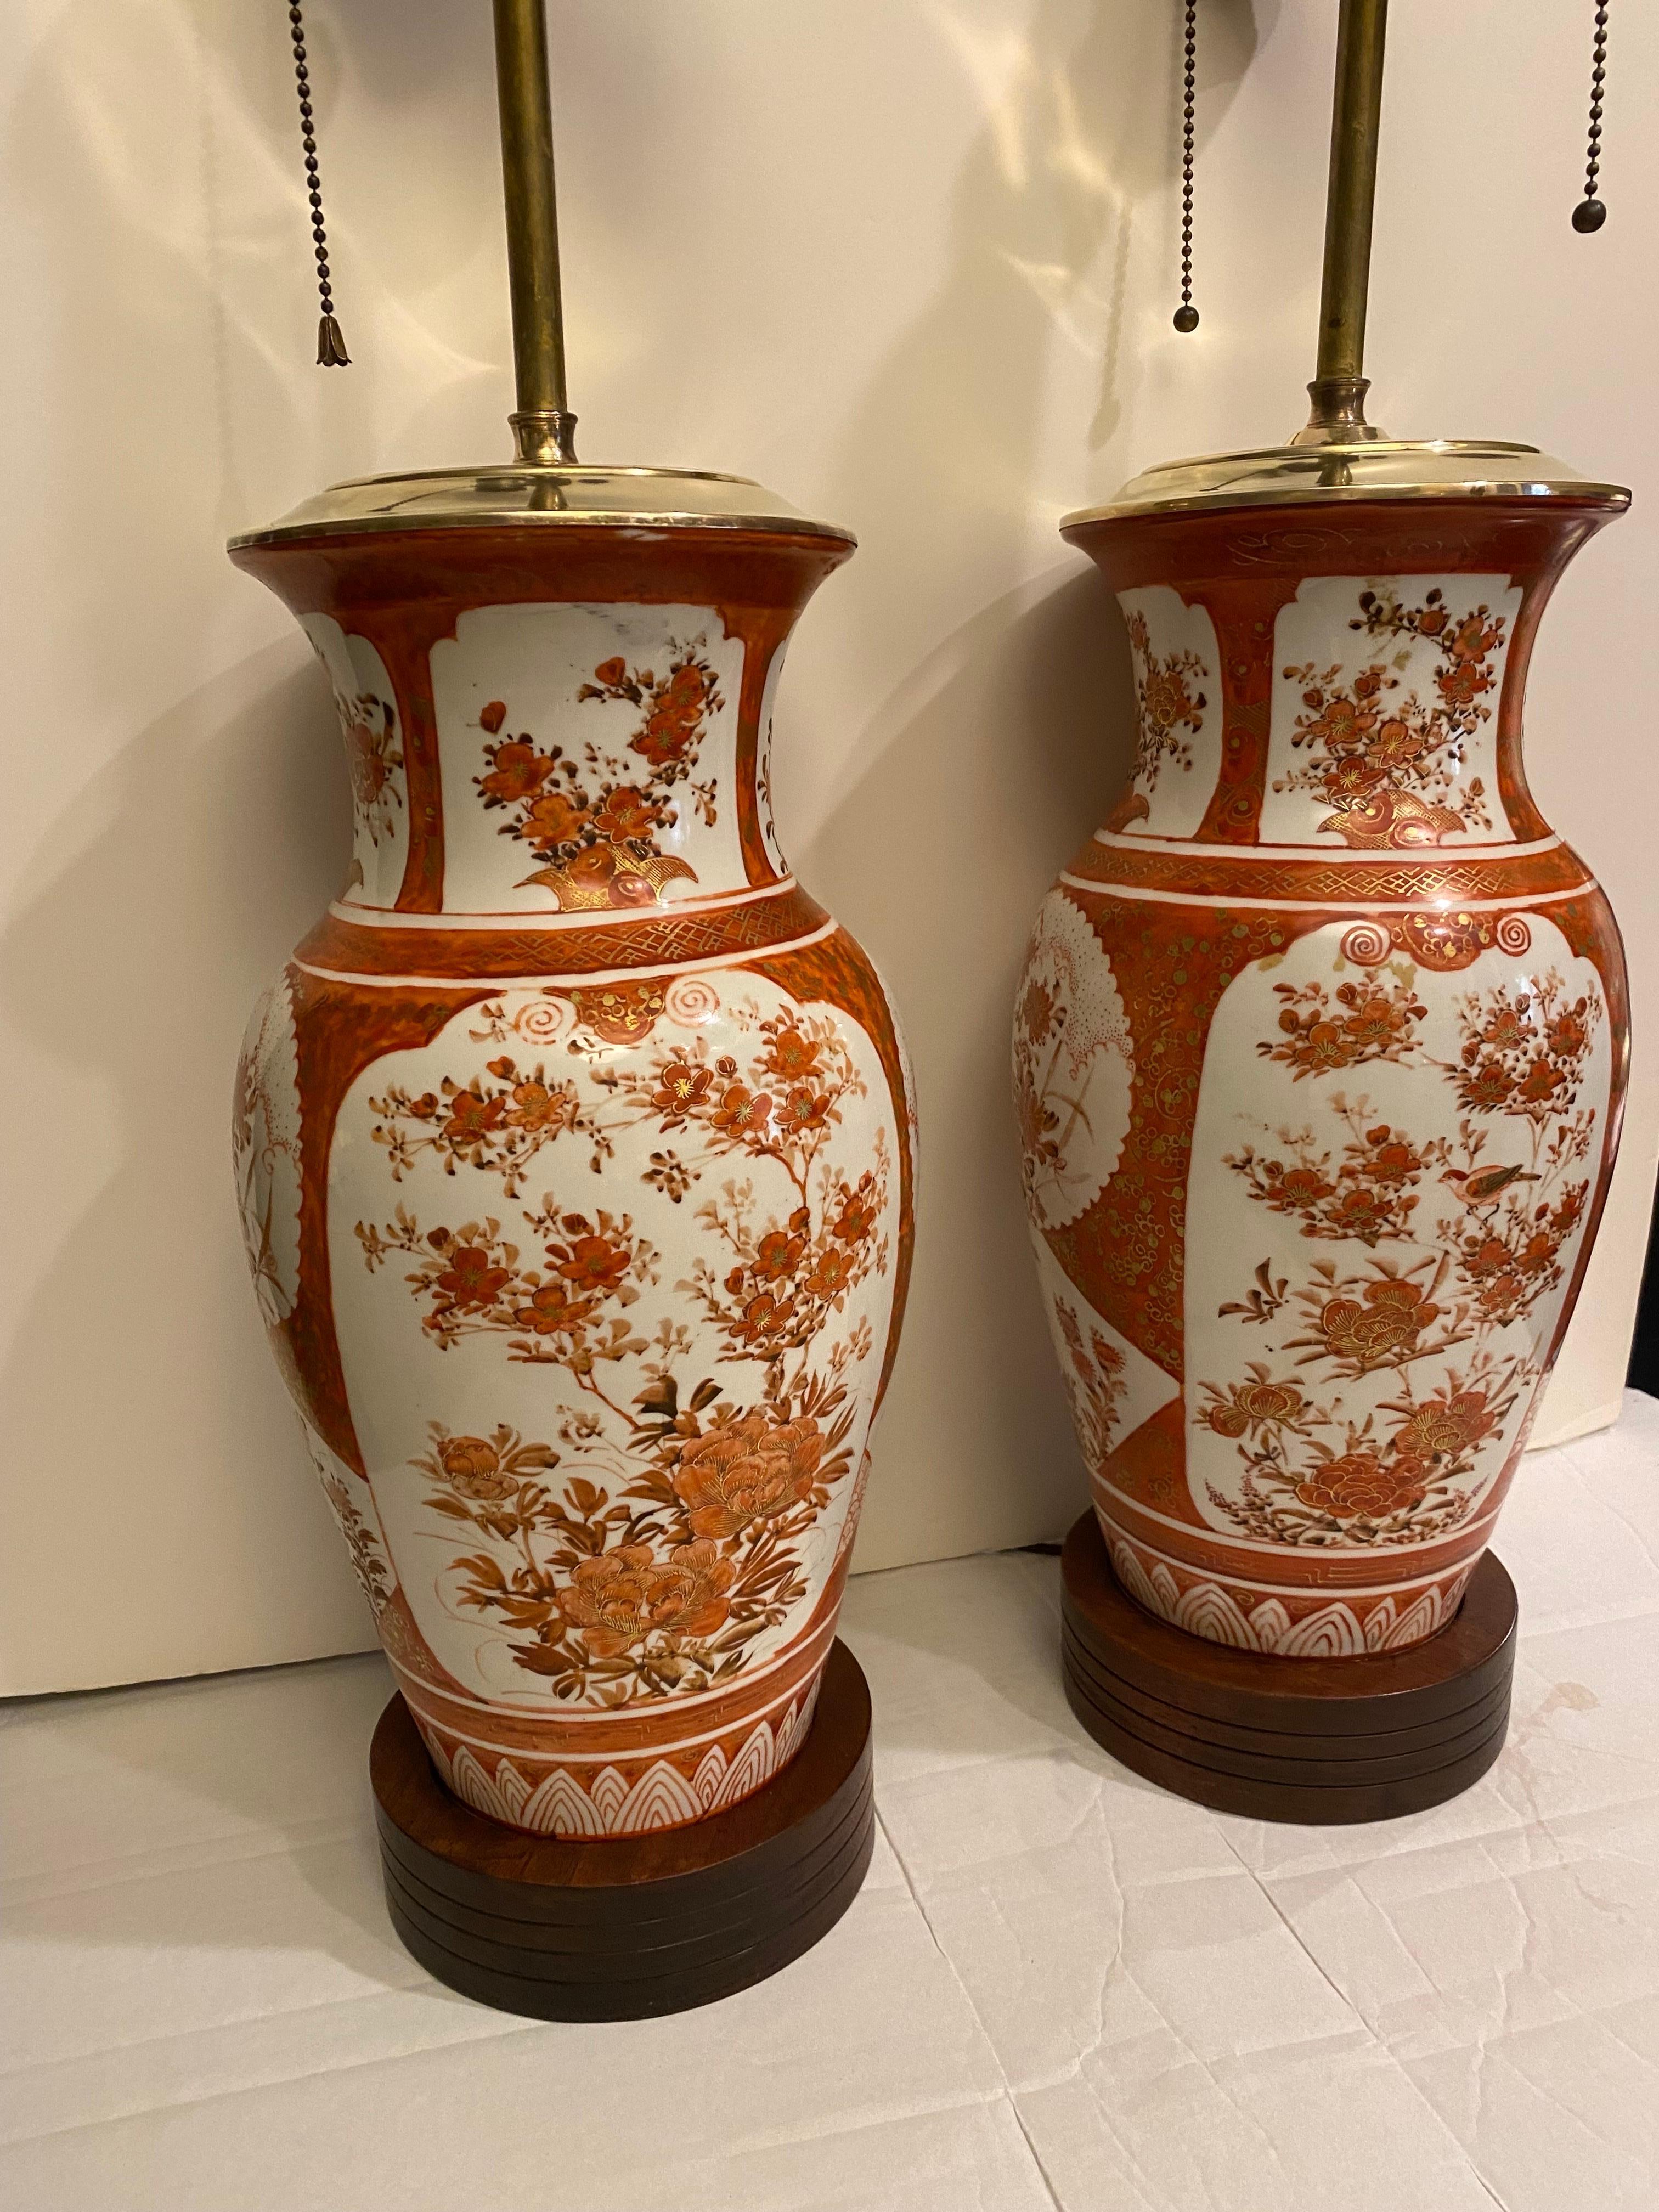 Paire classique de lampes en porcelaine rouge fer de Kutani.  Vases de la période Meiji vers 1880, aujourd'hui transformés en lampes.  Ces élégants vases en porcelaine japonaise fine ont été transformés en lampes au début du XXe siècle, vers 1920.